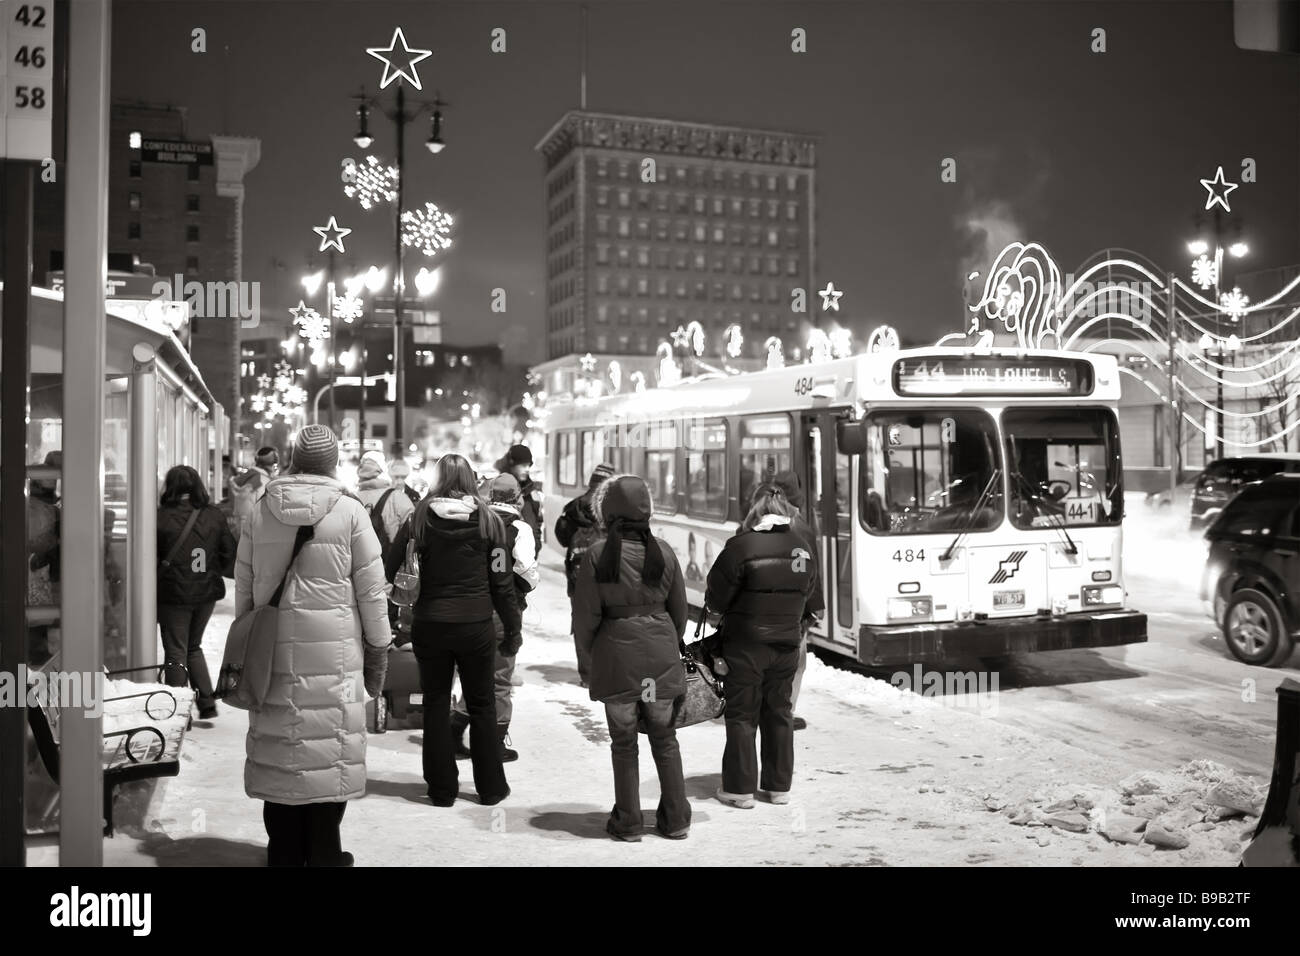 Pendolari in attesa di una fermata dell'autobus in una fredda giornata invernale, nel centro di Winnipeg, Manitoba, Canada. Foto Stock